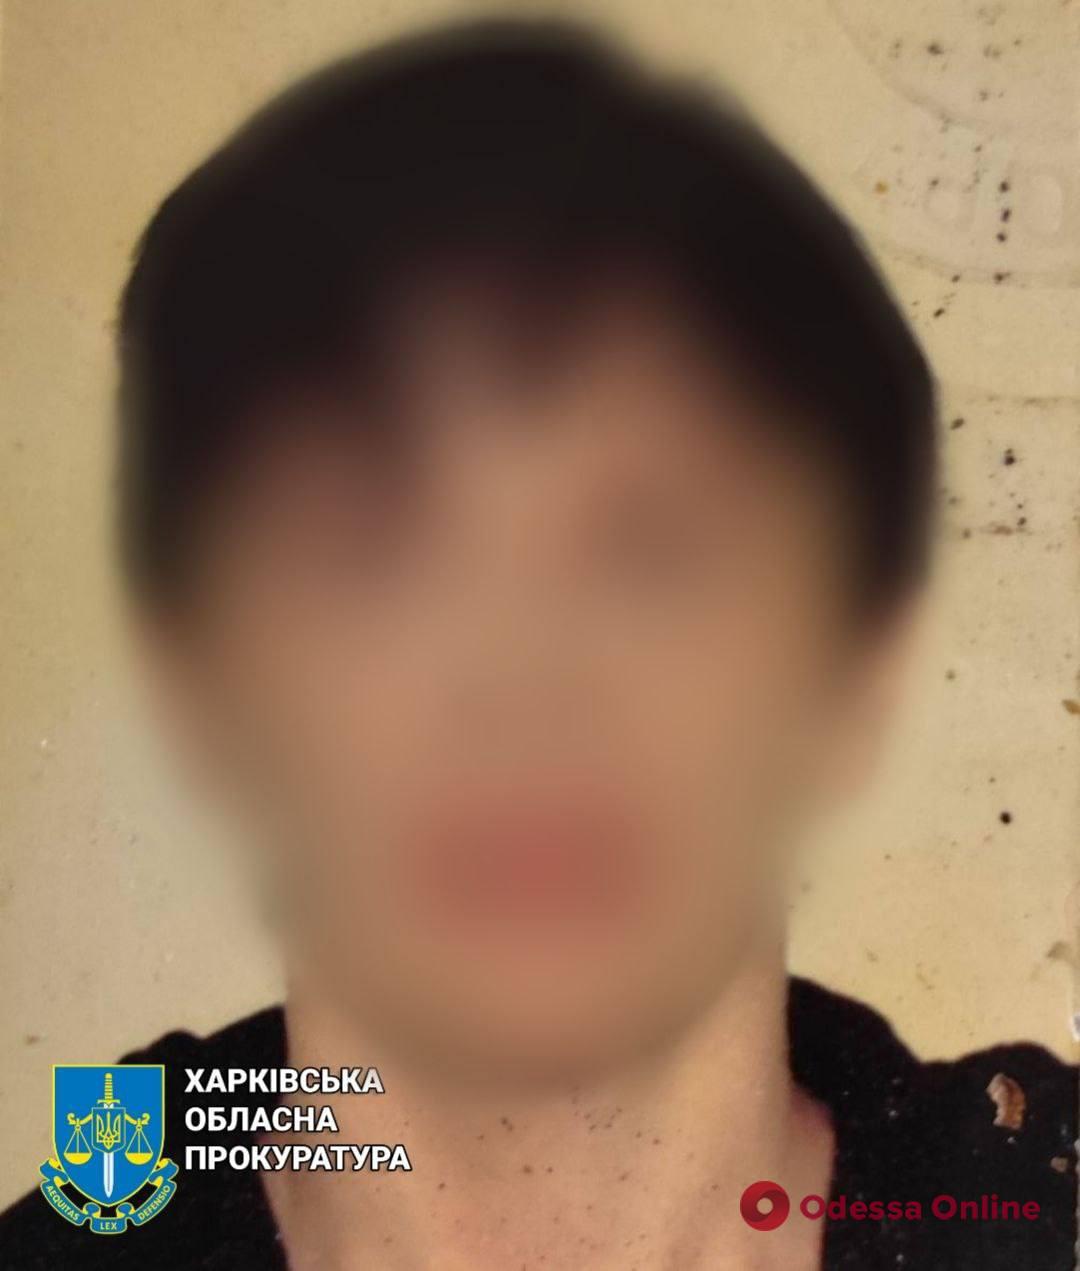 Здавала позиції ЗСУ: жительку Харківщини засуджено до 15 років тюрми